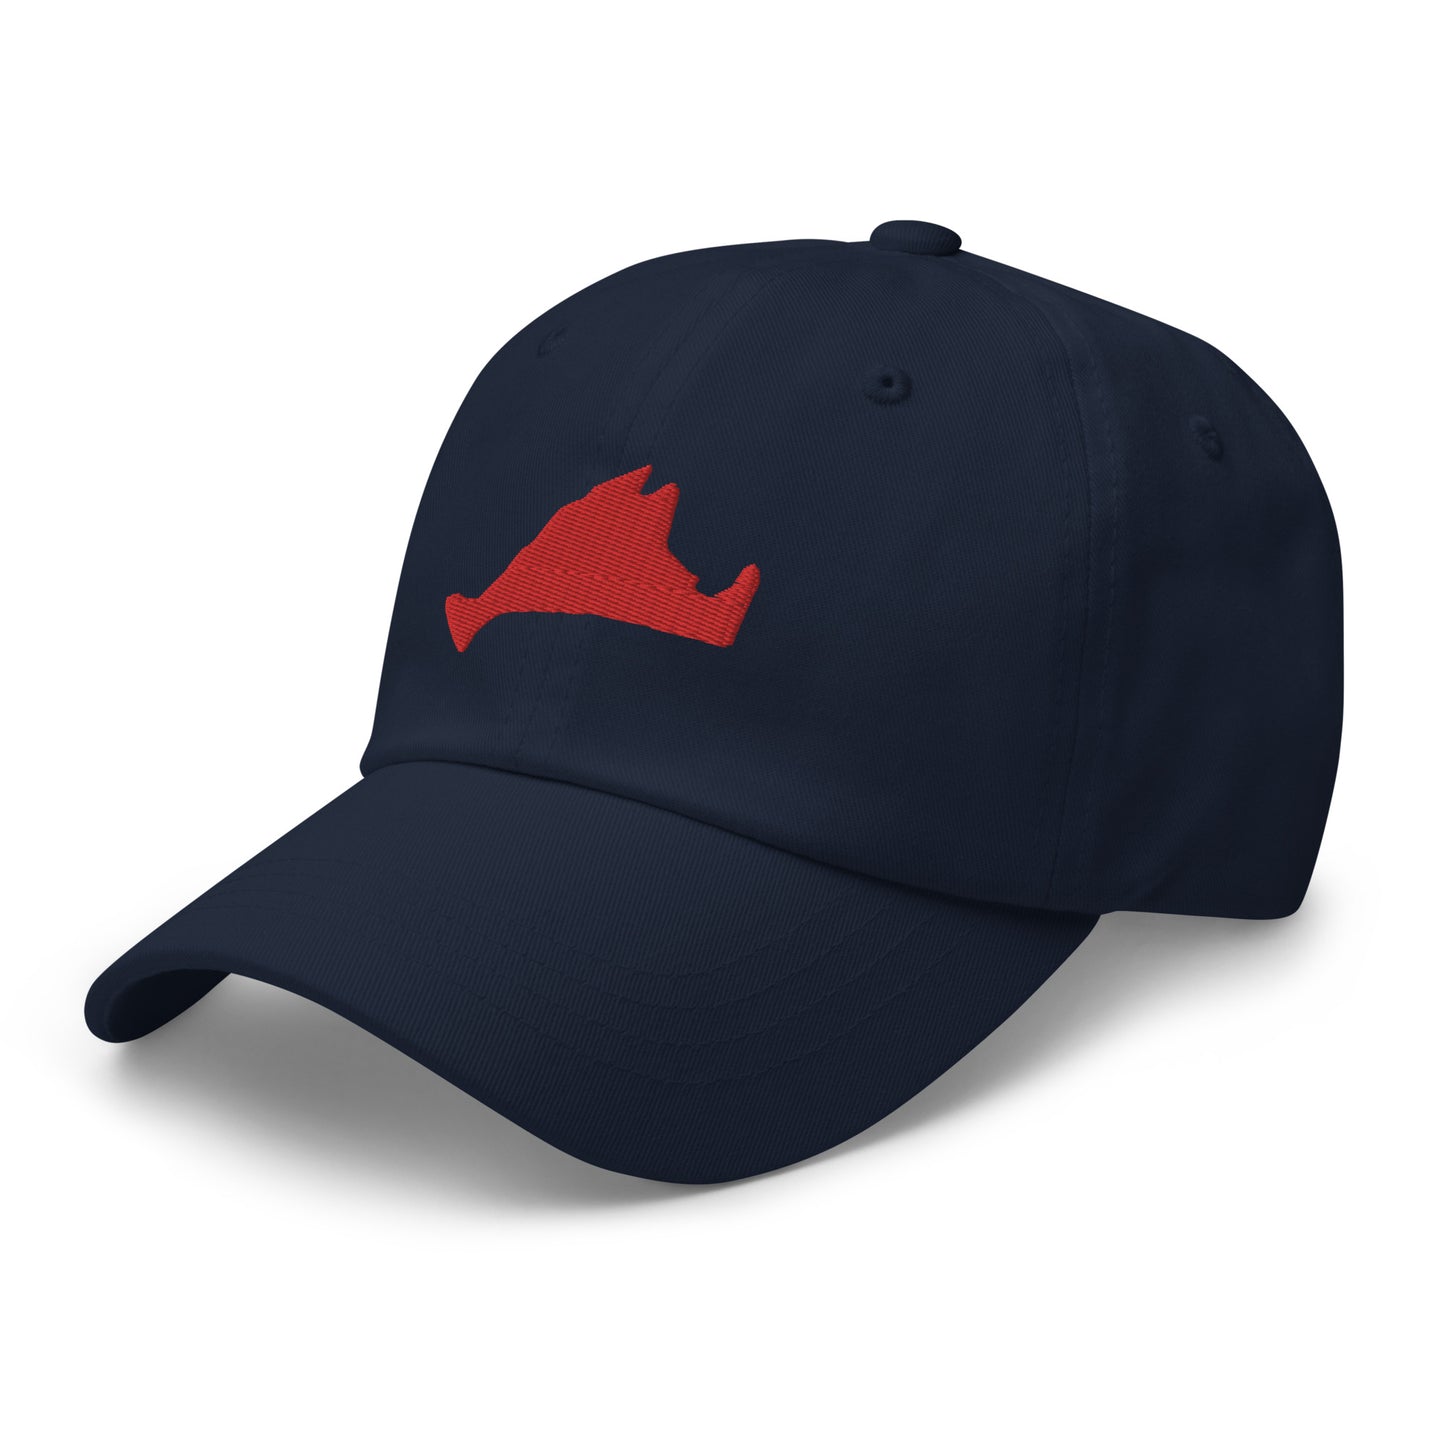 Martha's Vineyard Dad Hat - Red on Navy